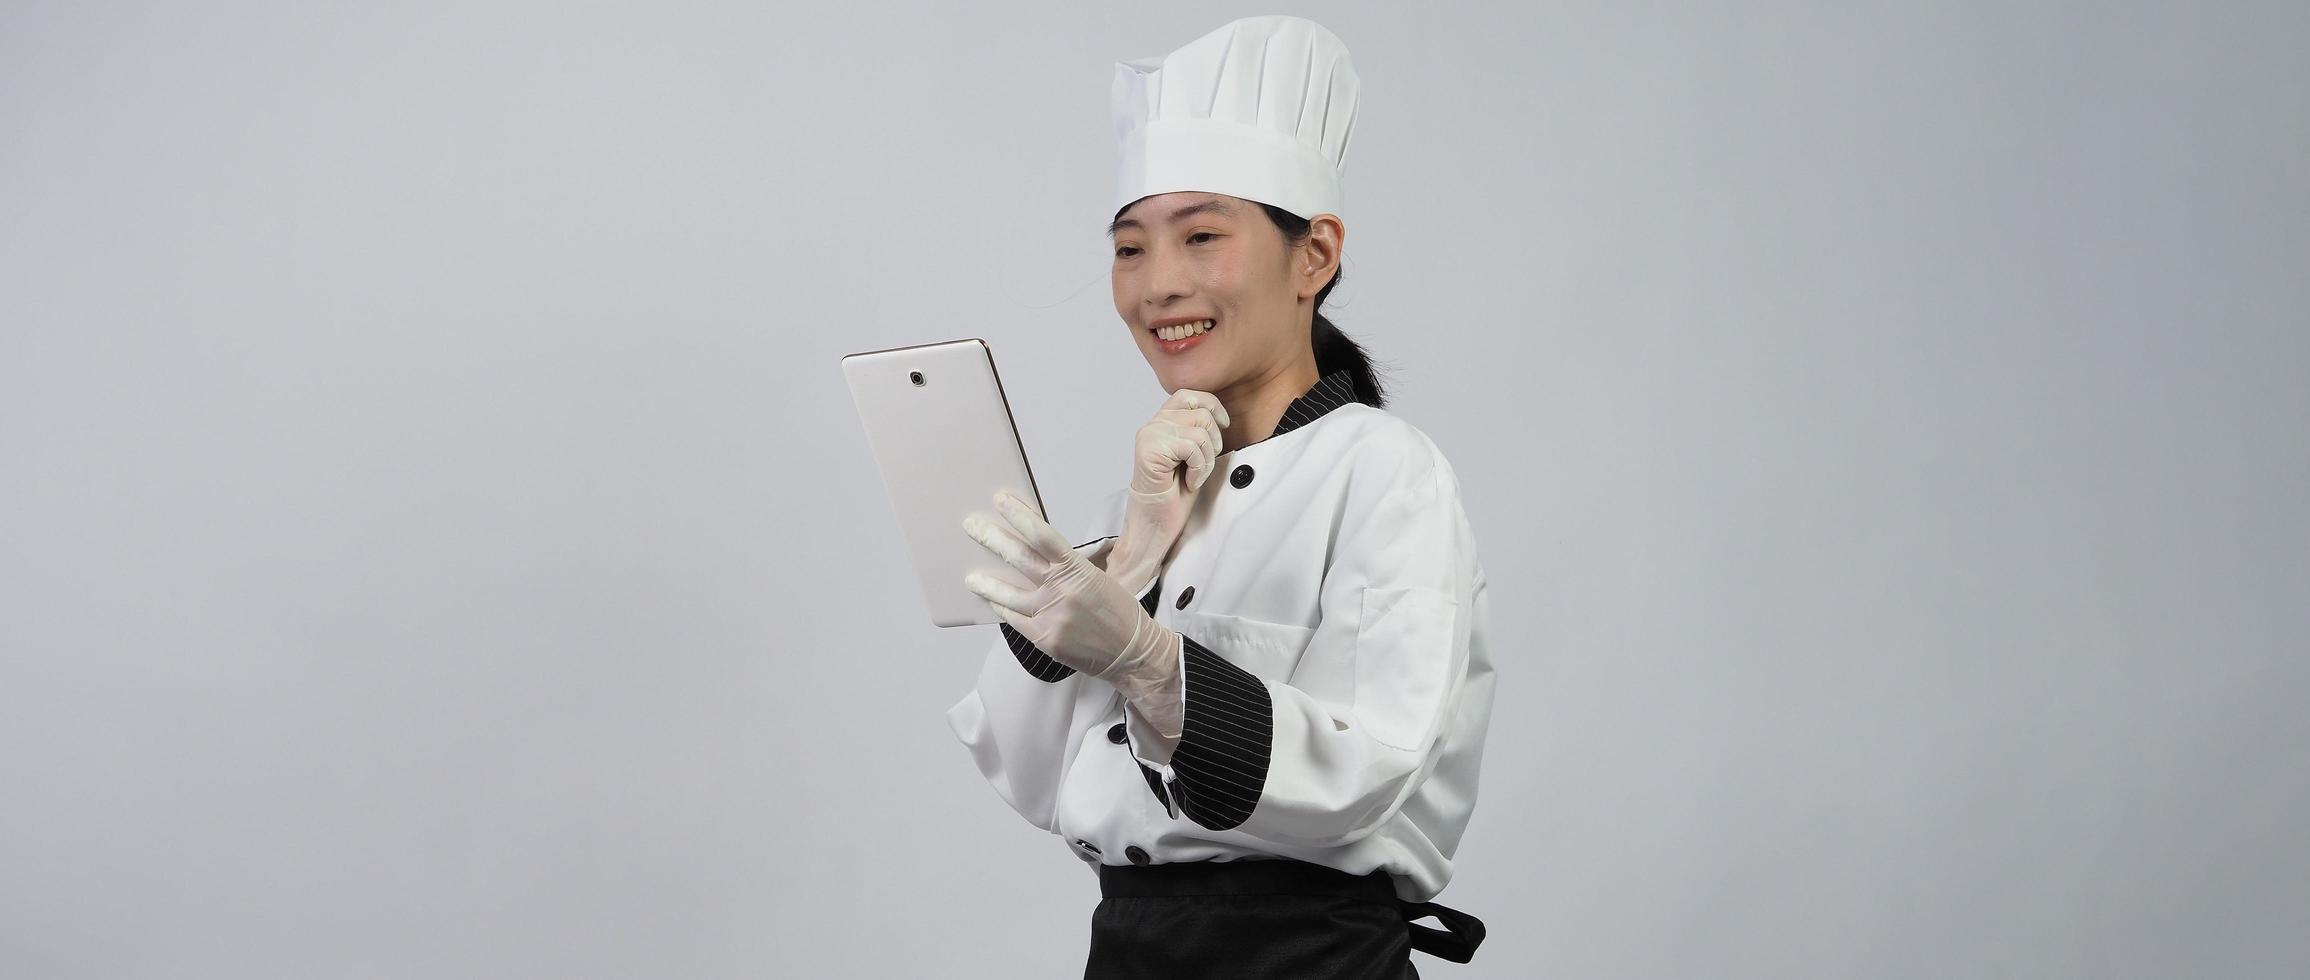 Asiatische Köchin, die Smartphone oder digitales Tablet hält und Bestellung von online erhalten hat foto